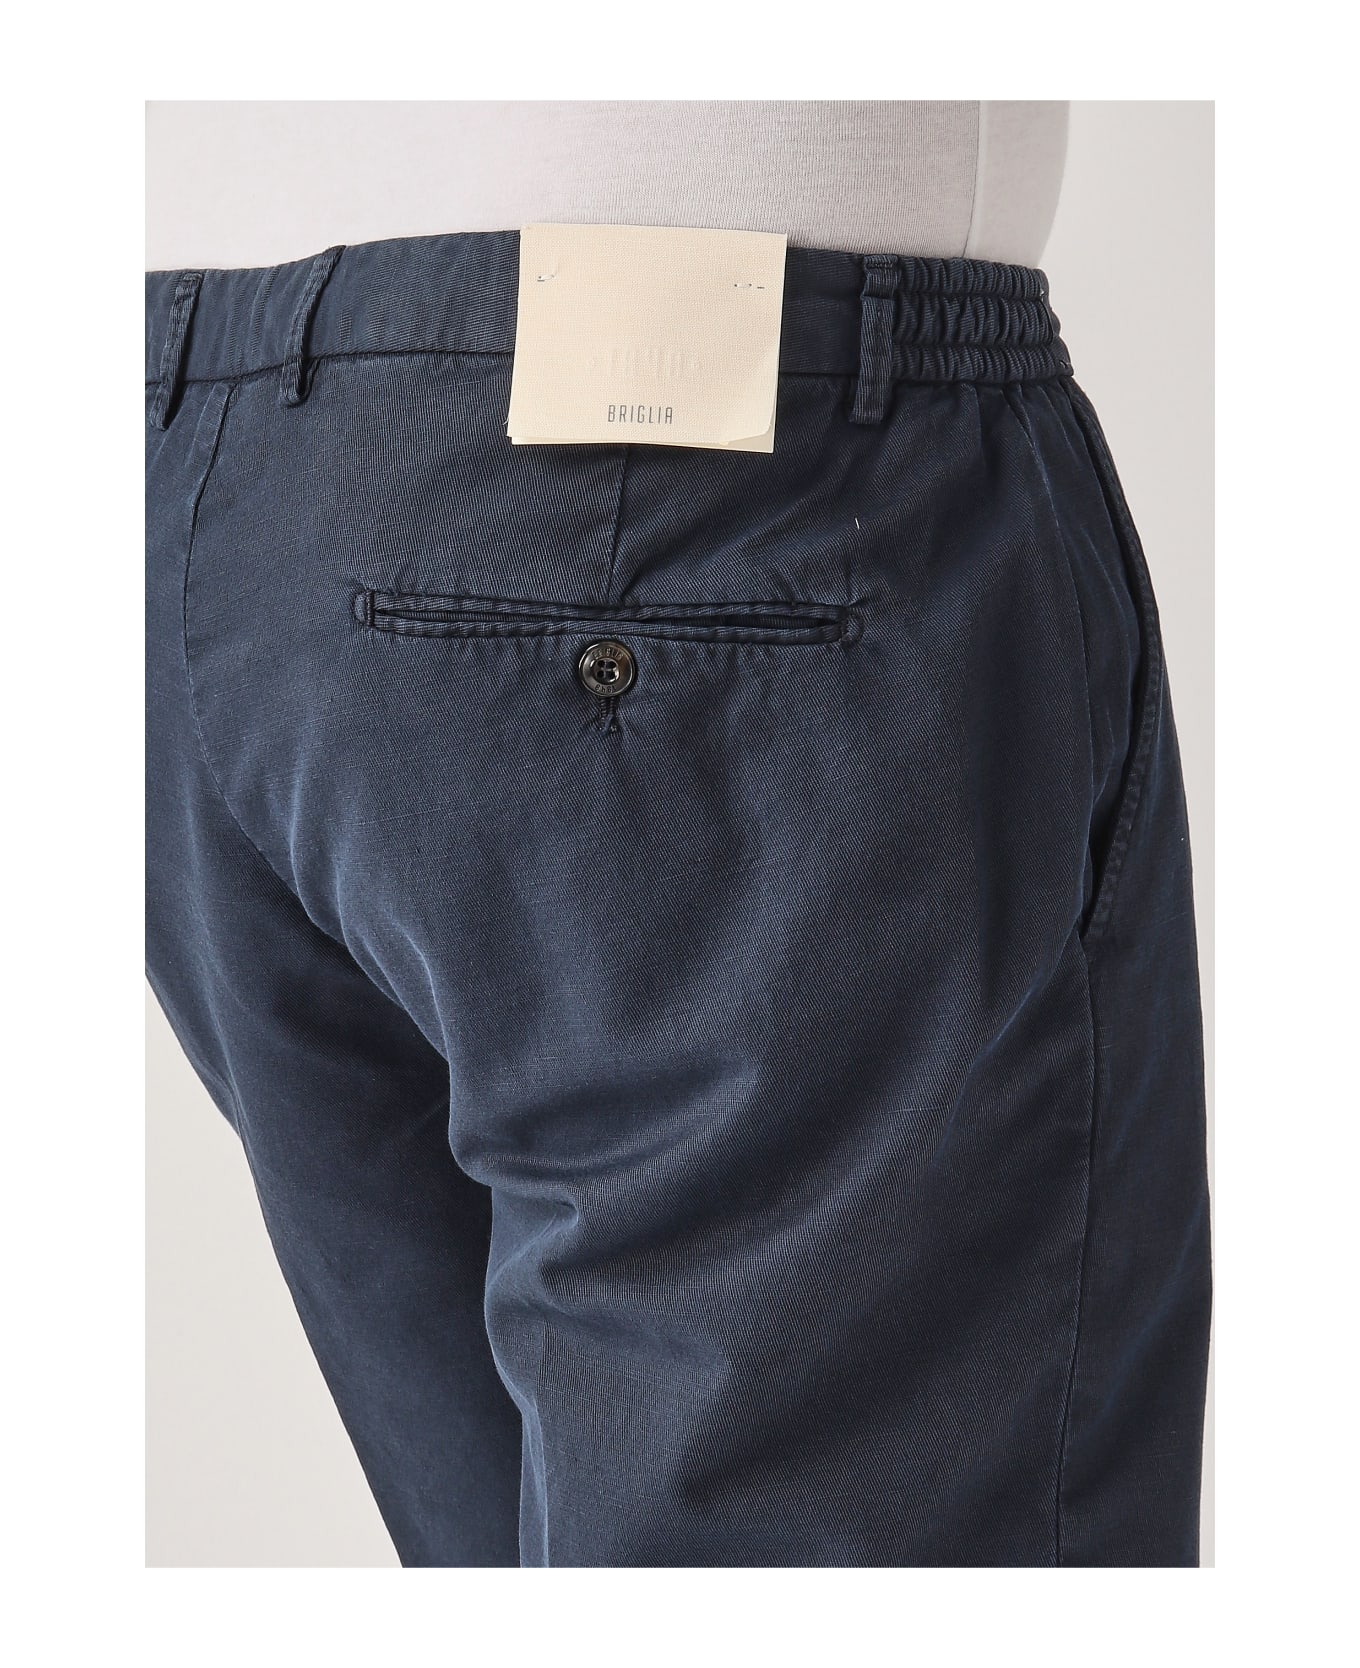 Briglia 1949 Bermuda Shorts - BLU PROFONDO ショートパンツ